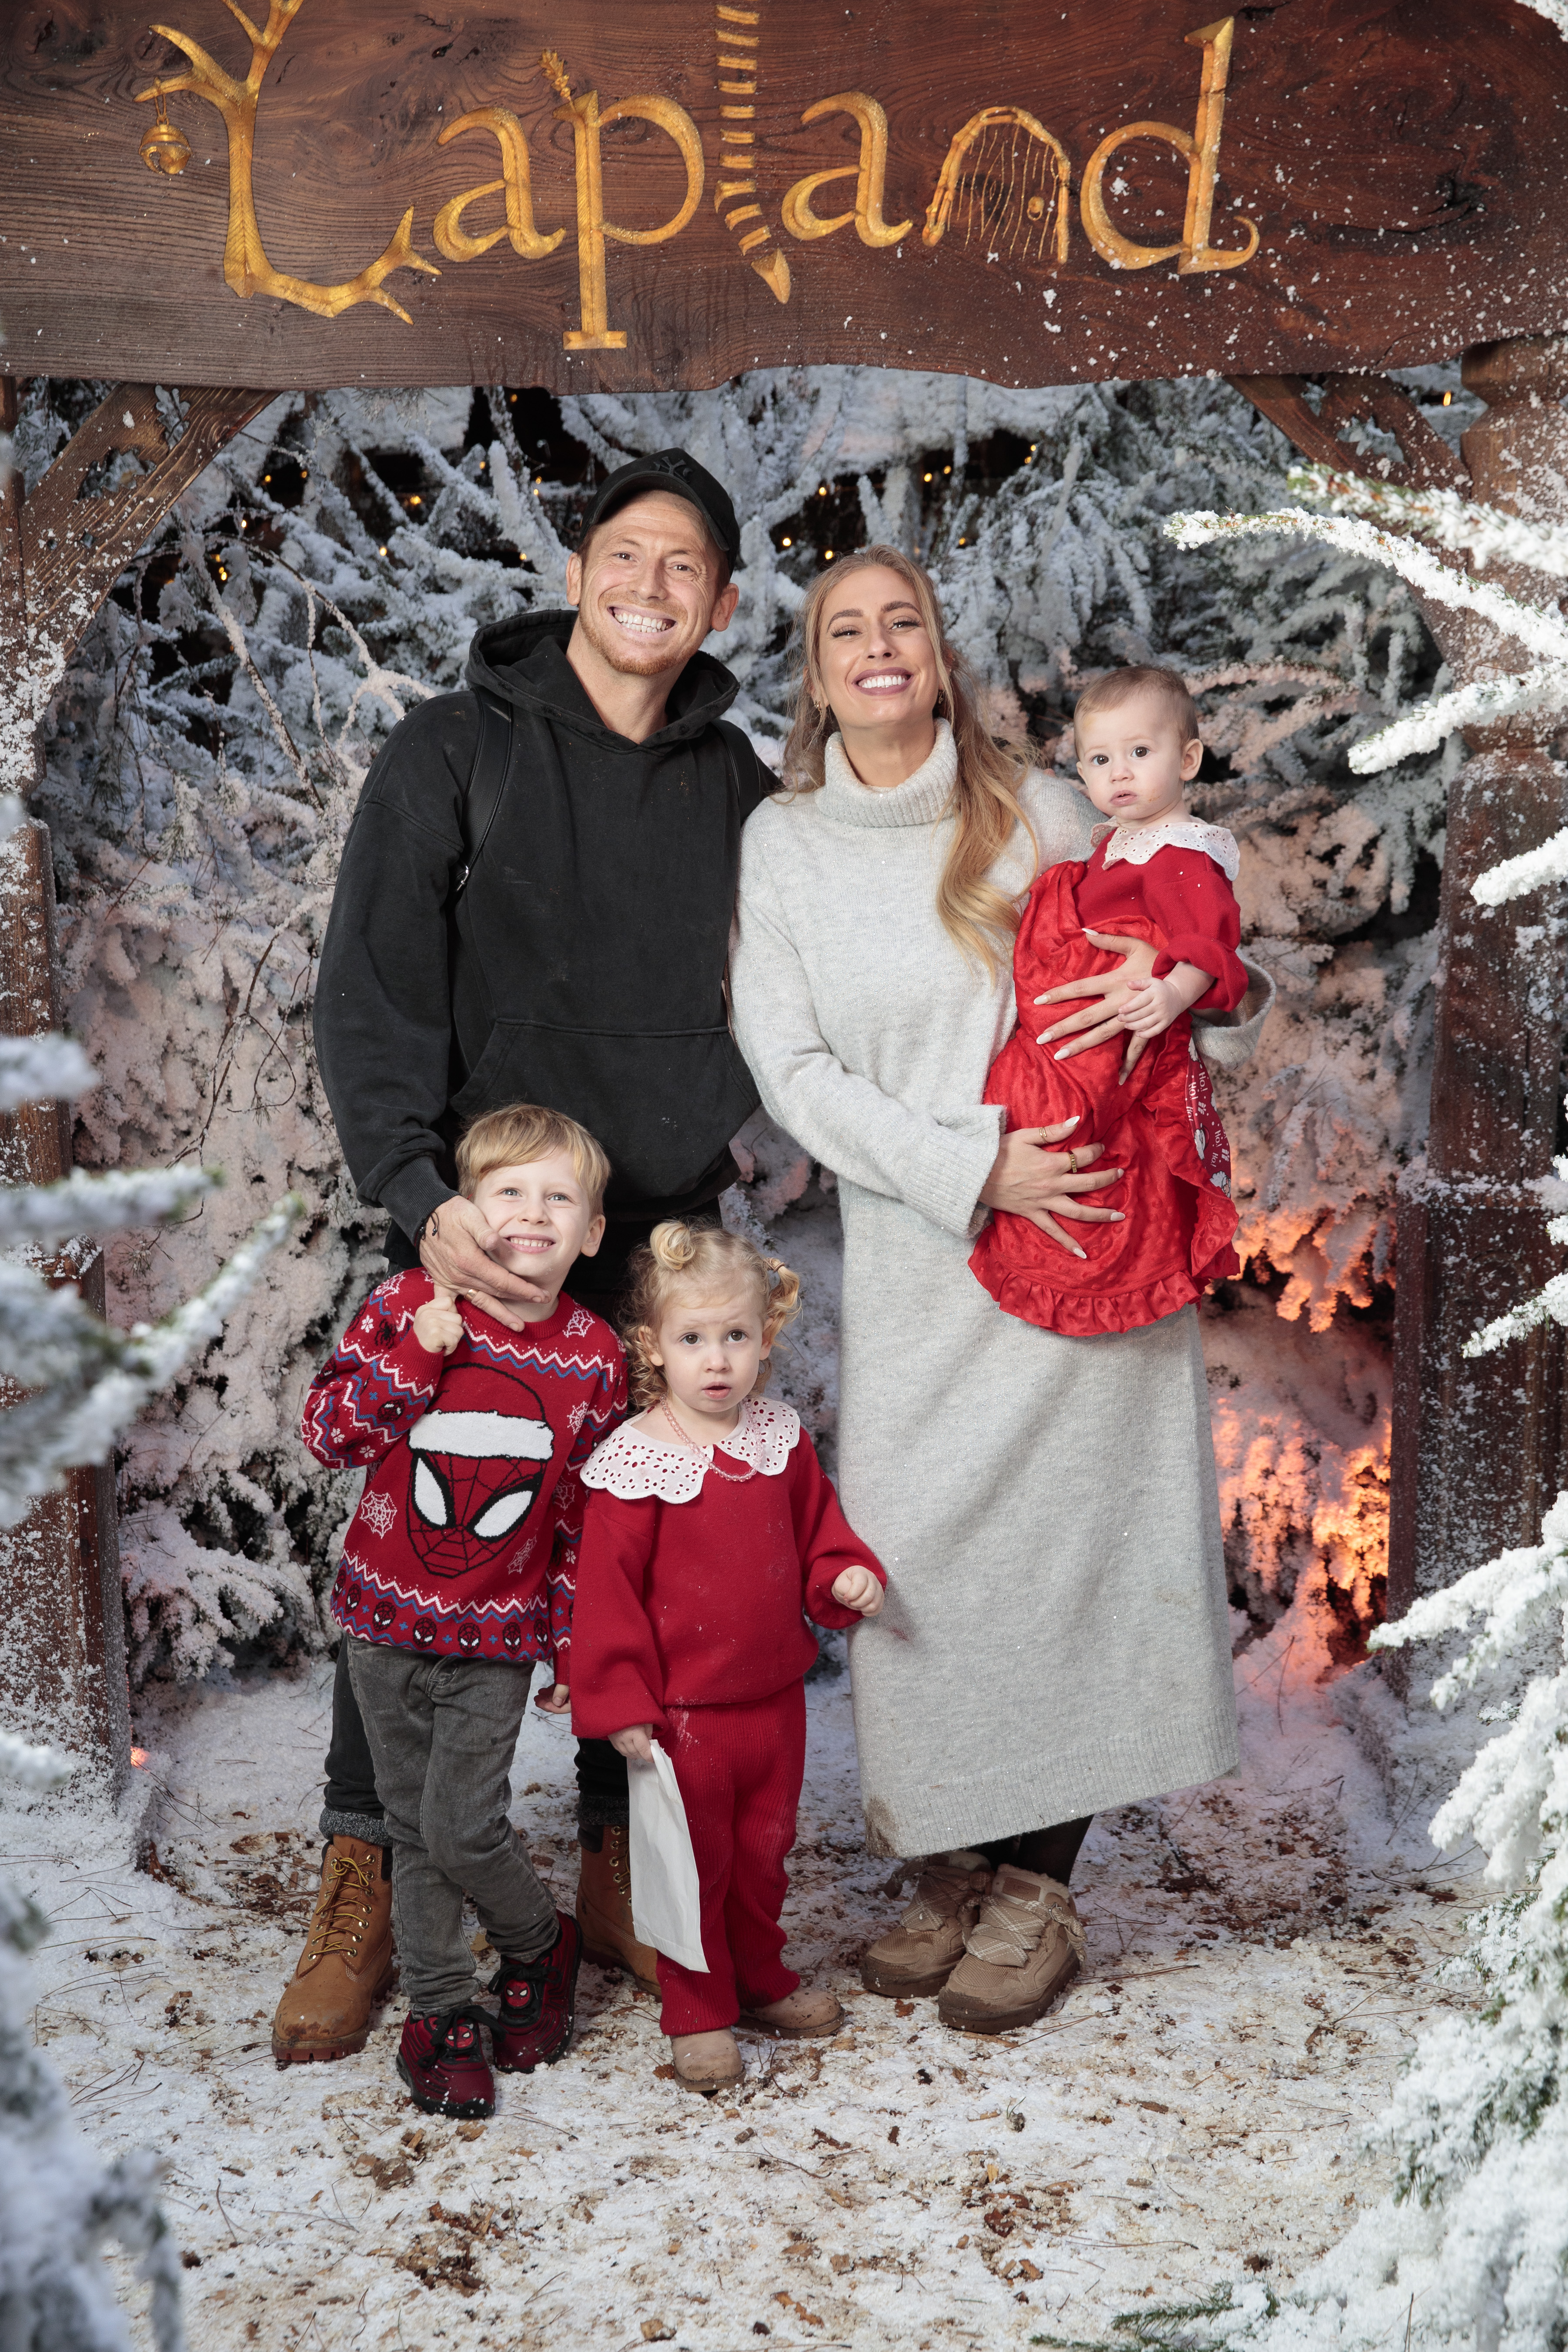 Die in Lappland abgebildete Familie Solomon-Swash kommt in Weihnachtsstimmung